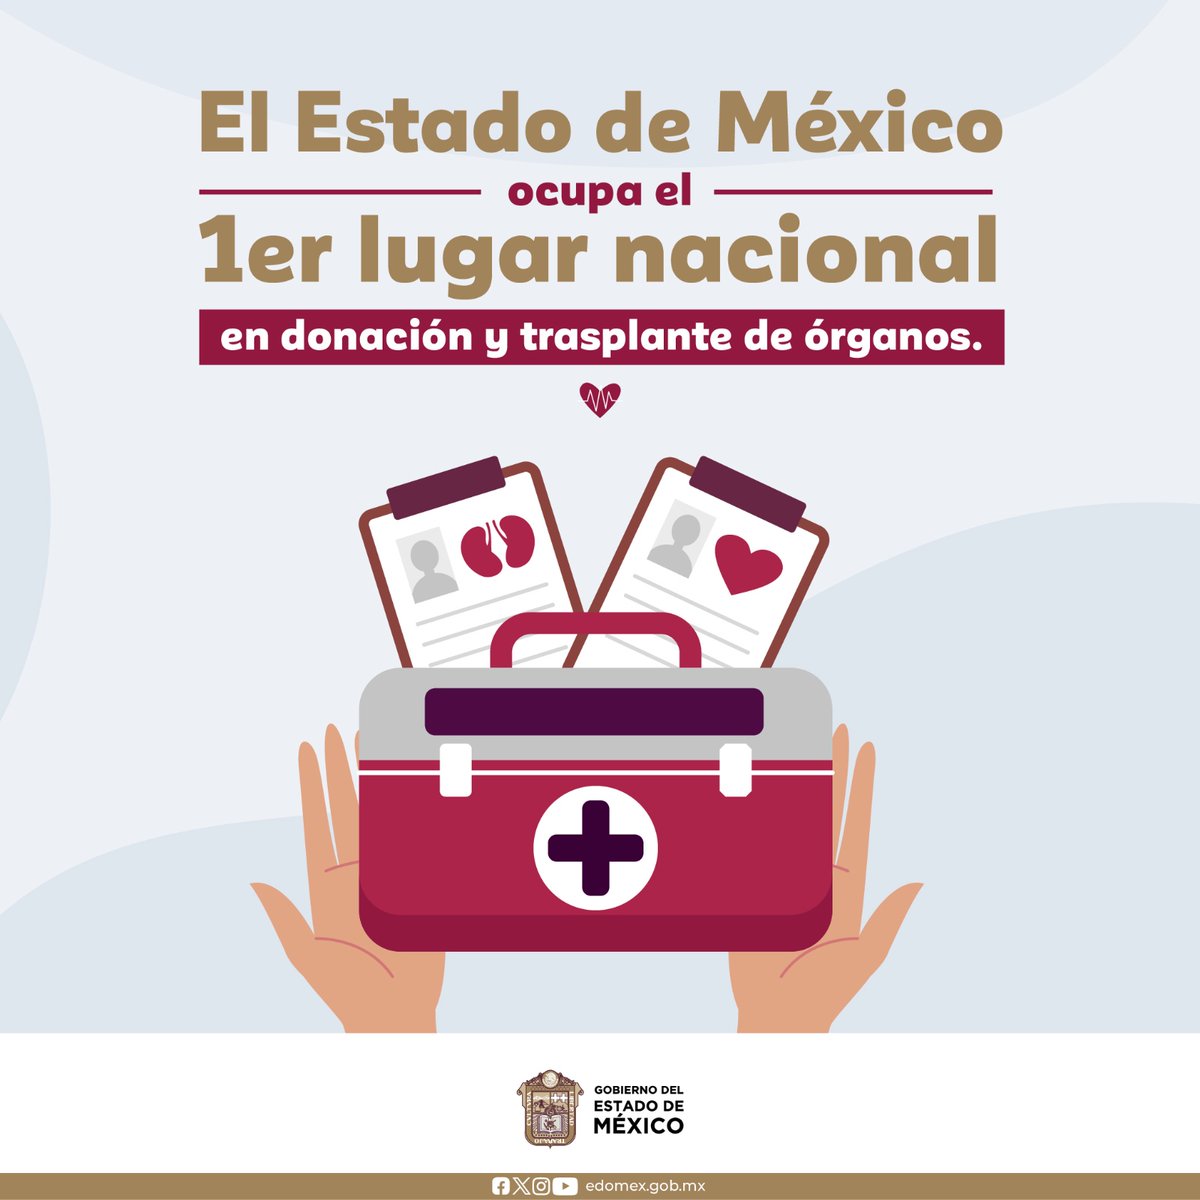 La Comisión Nacional de Trasplantes (CENATRA) informa que, durante el primer semestre 2024, el Estado de México continúa ocupando el primer lugar a nivel nacional en trasplante y donación de órganos.